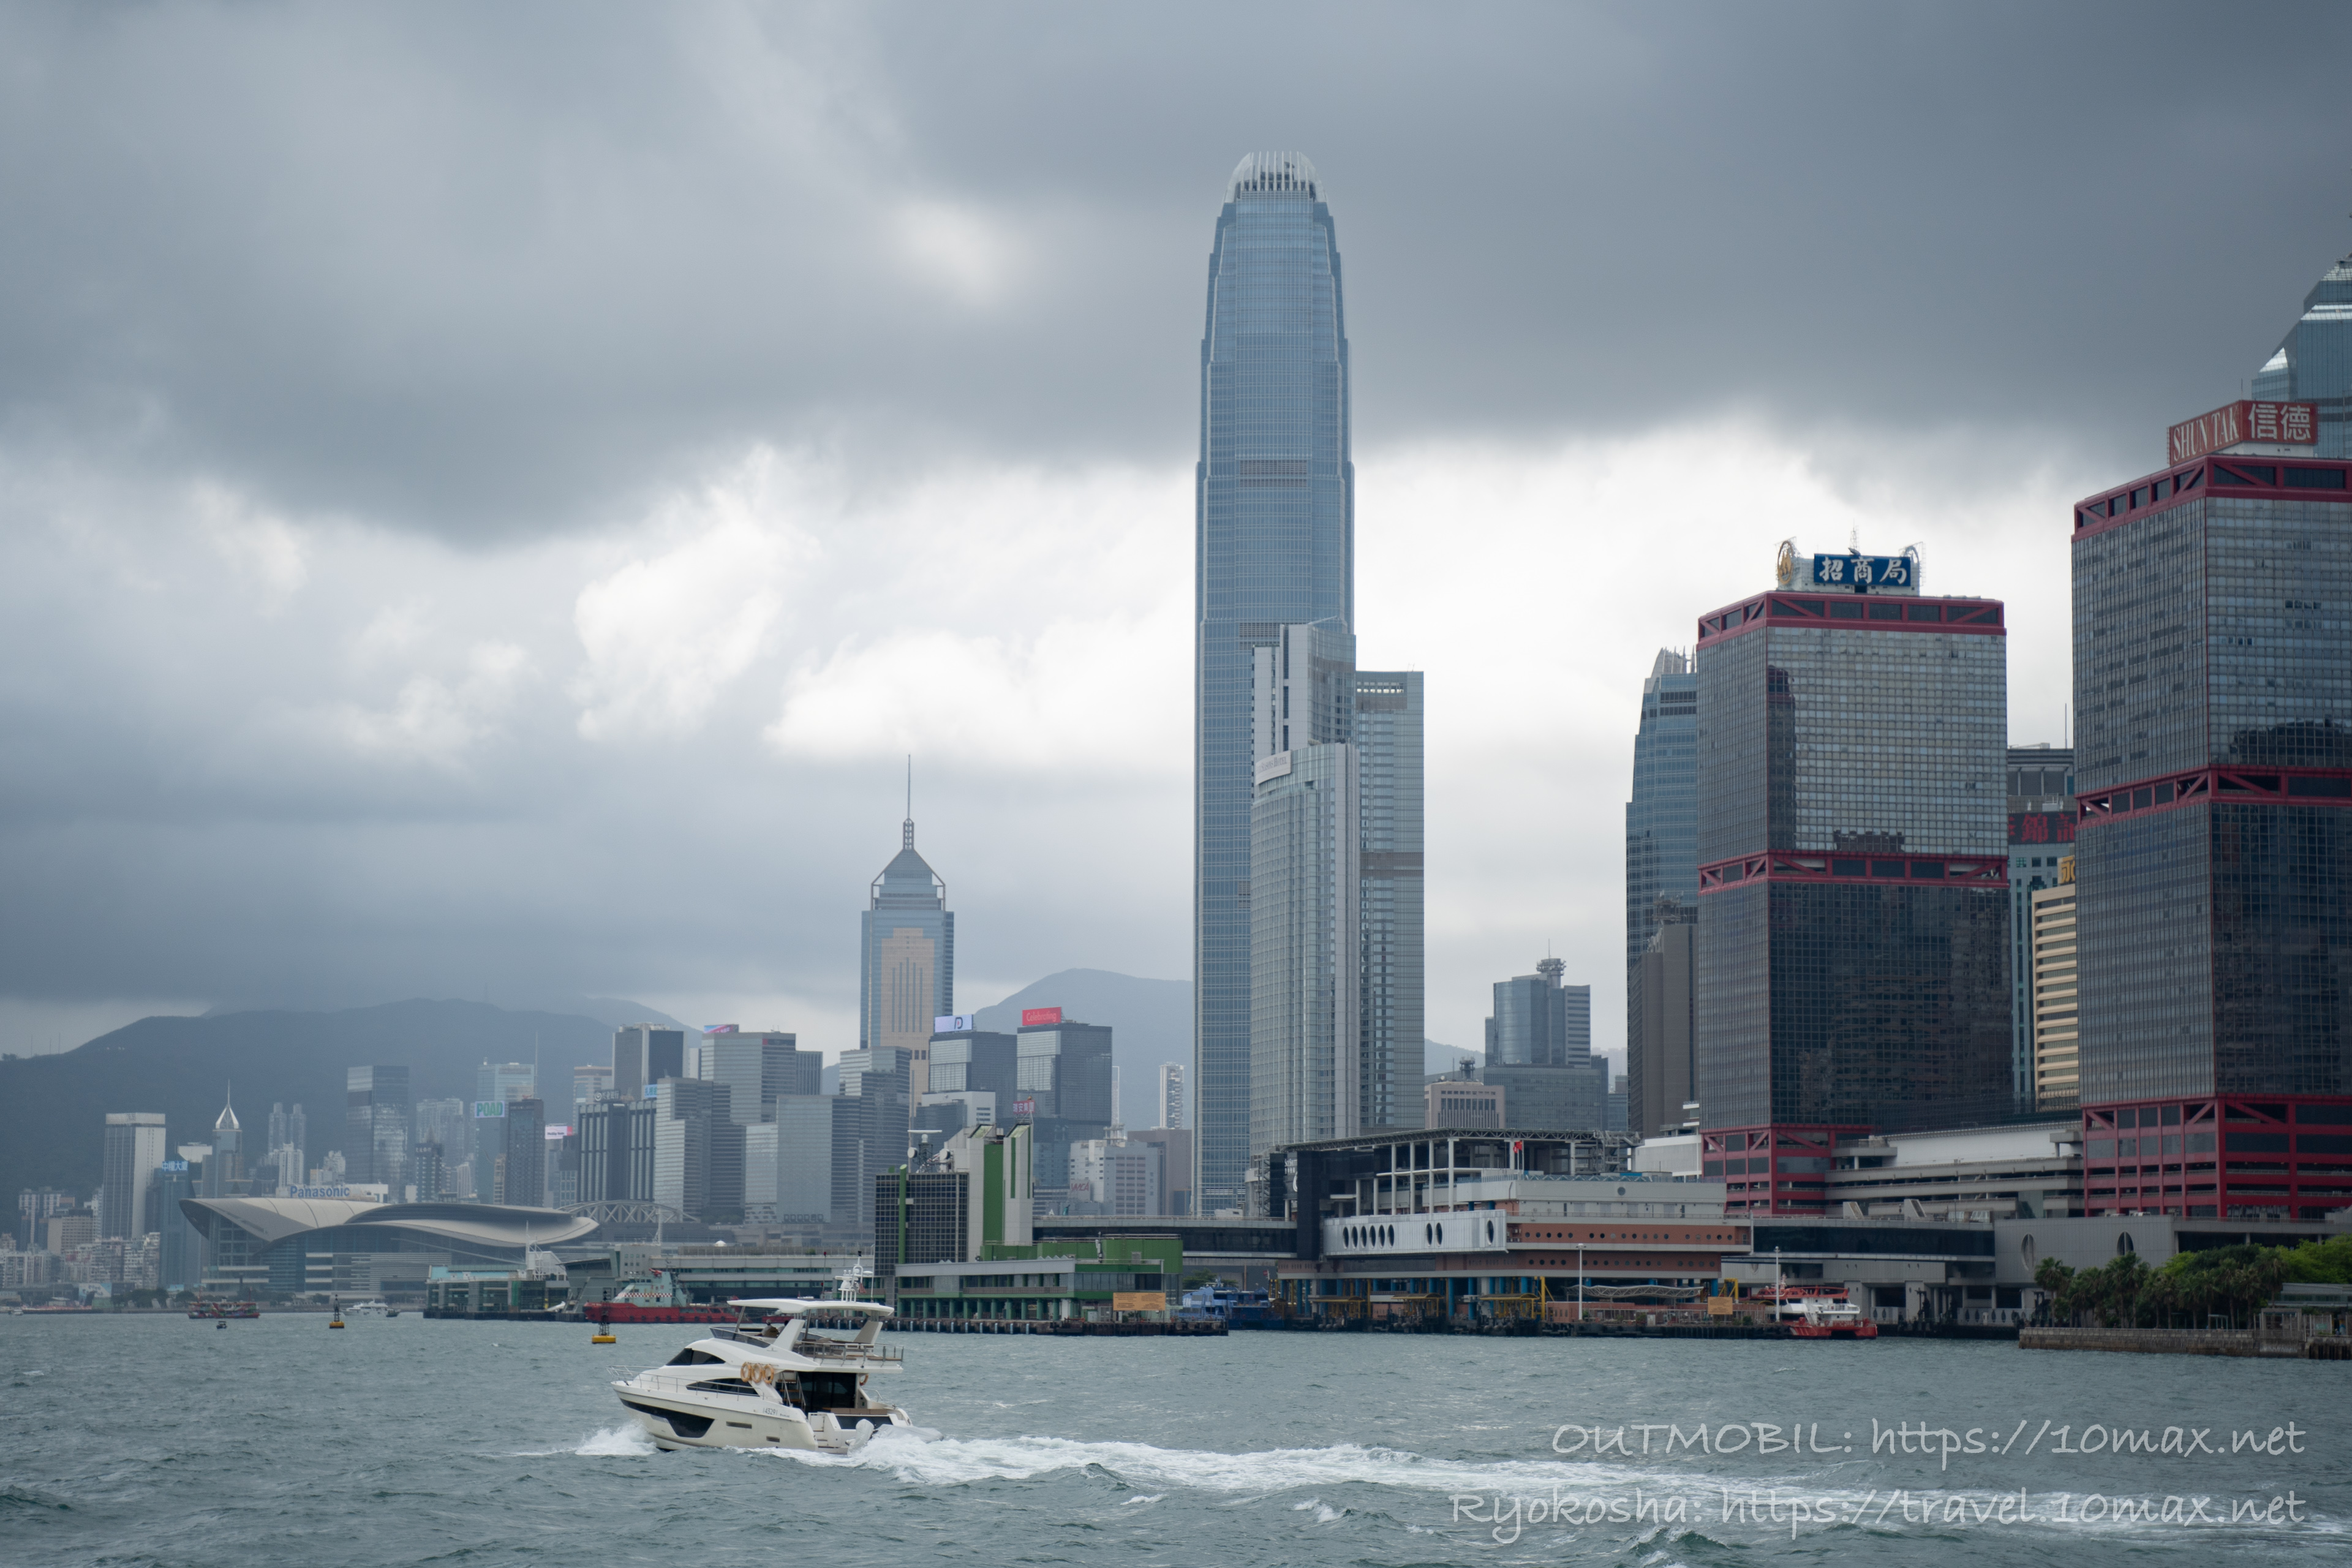 中環発長州島行きフェリーからの風景, 香港